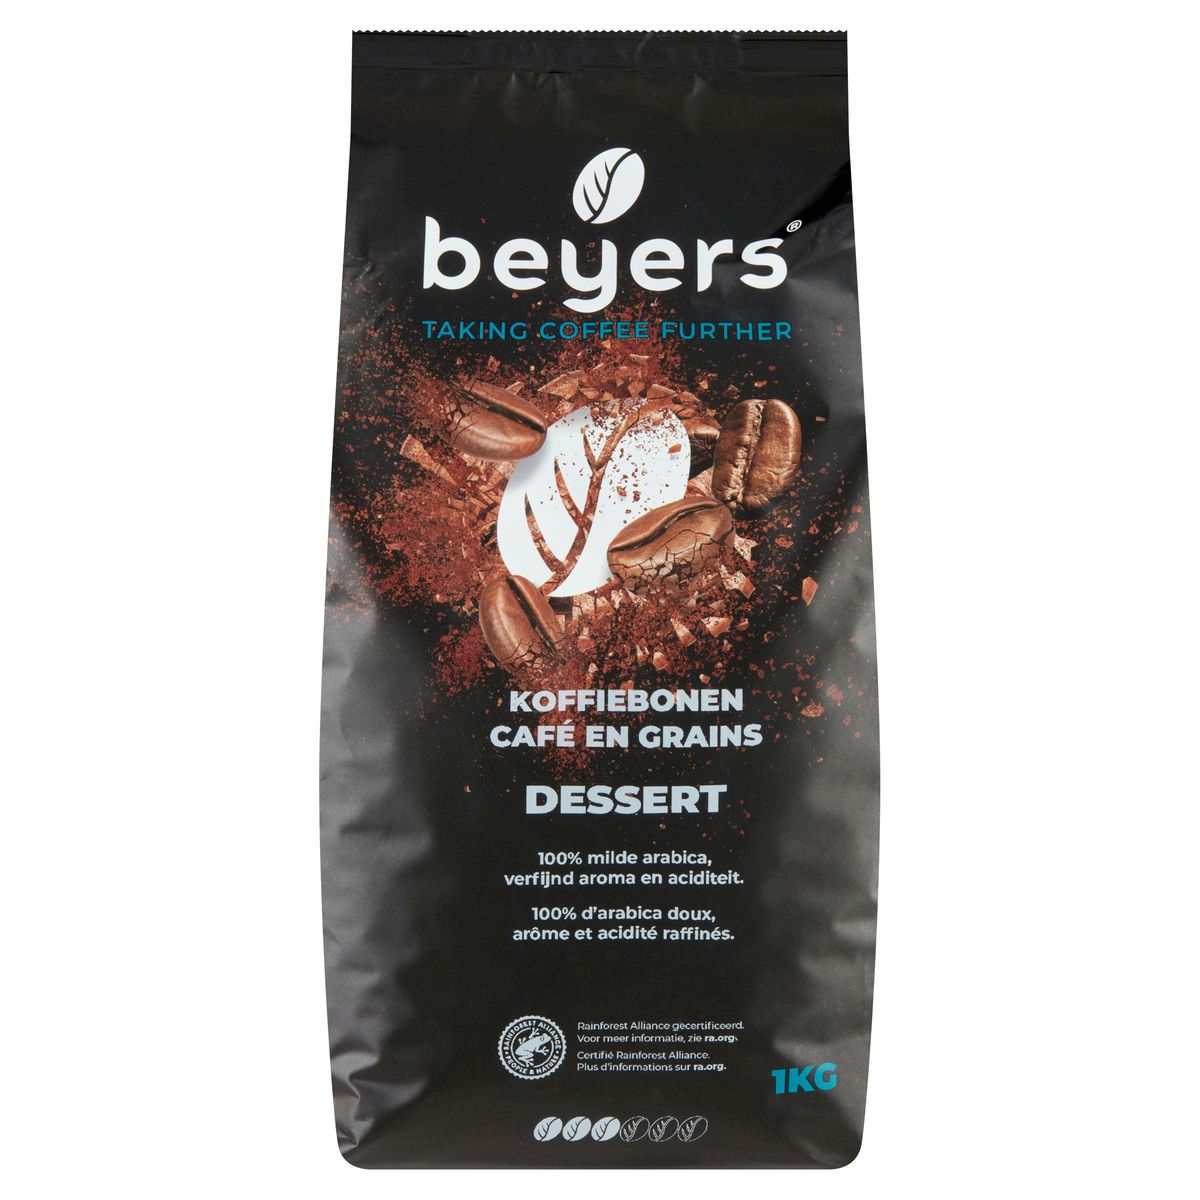 Beyers Koffiebonen Dessert 1 kg